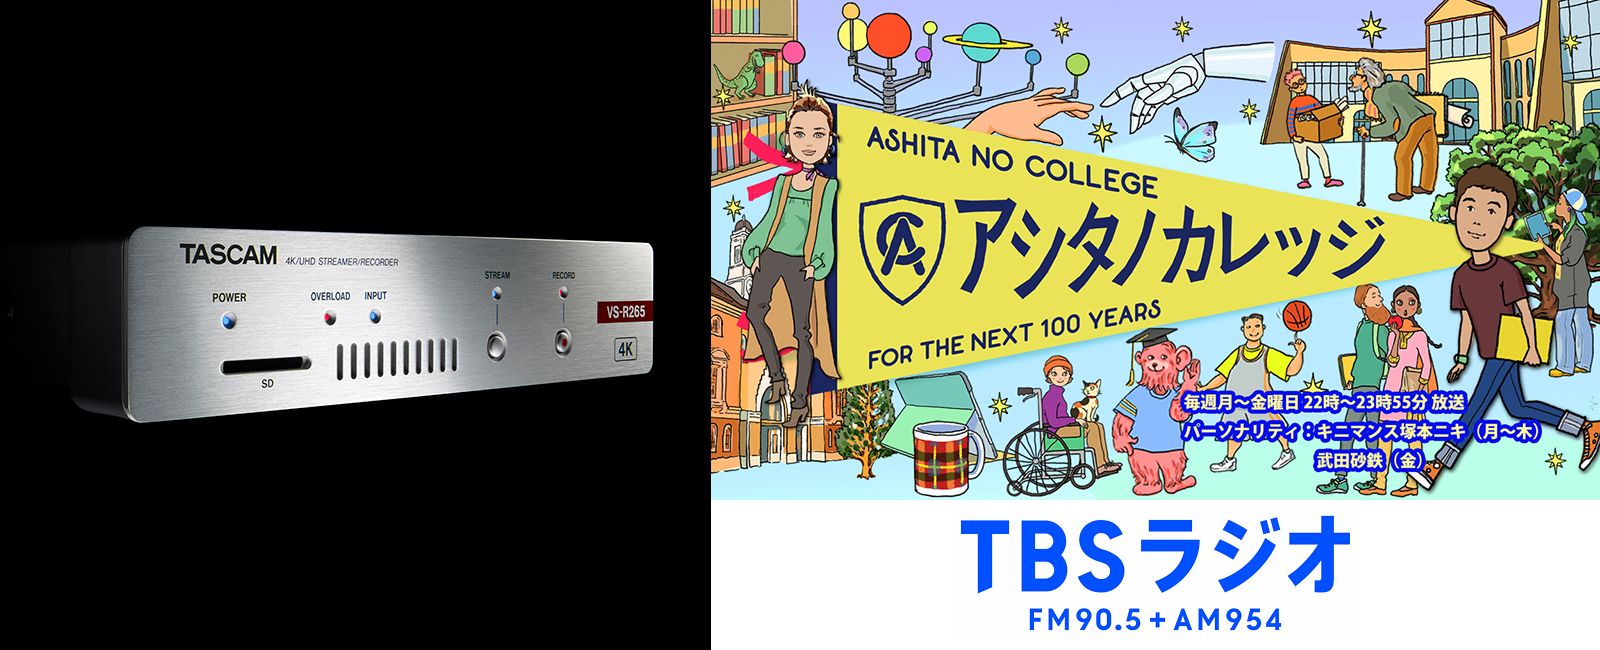 株式会社TBSラジオ様 ライブストリーミング用エンコーダー/デコーダー「VS-R265」導入事例